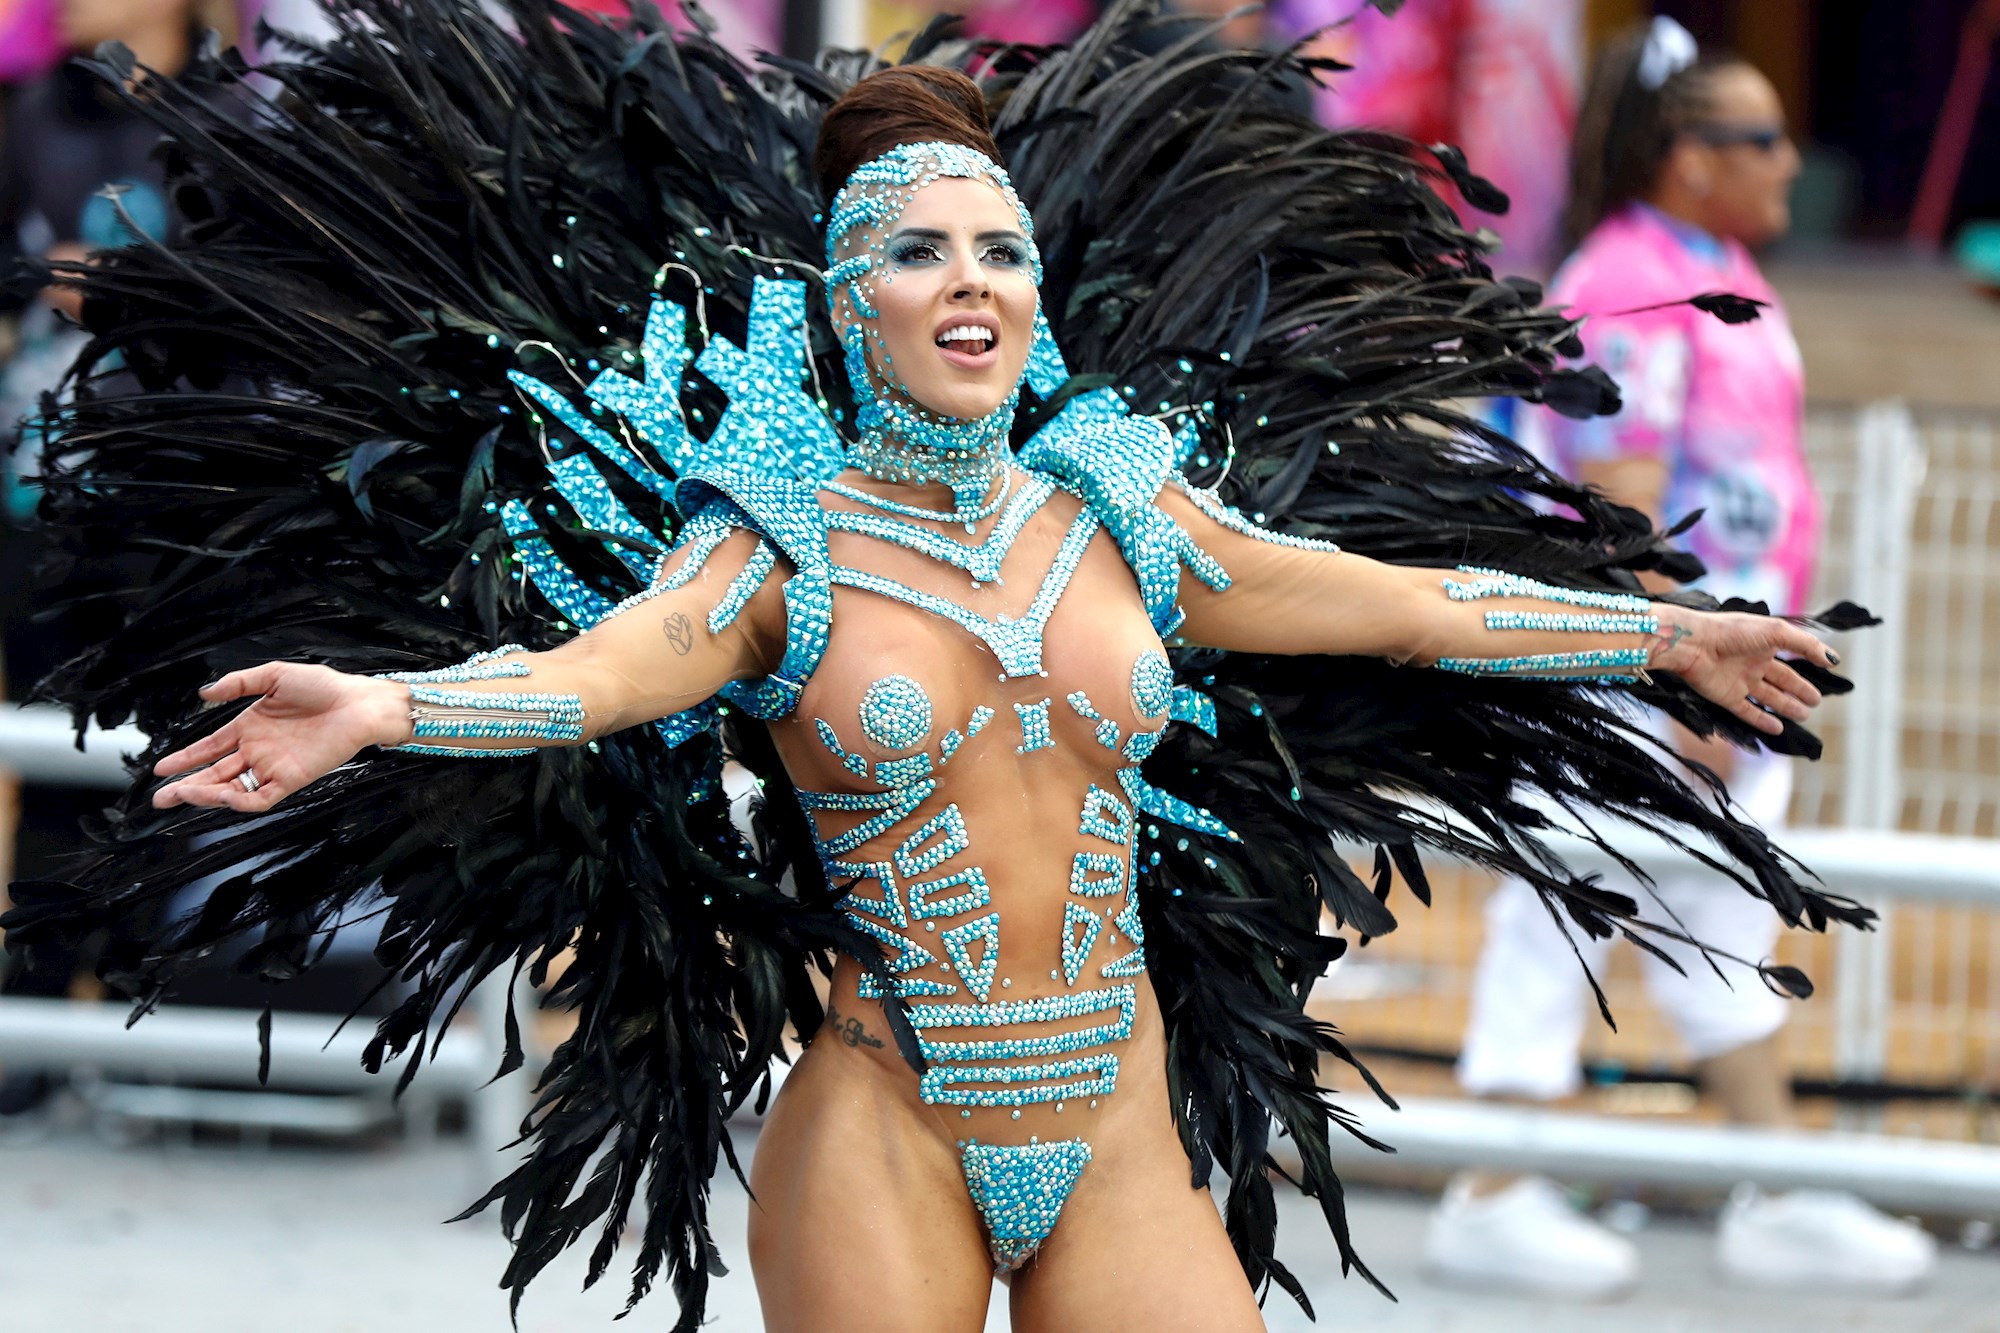 Los atrevidos trajes de las bailarinas en el Carnaval de Río de Janeiro (FOTOS)